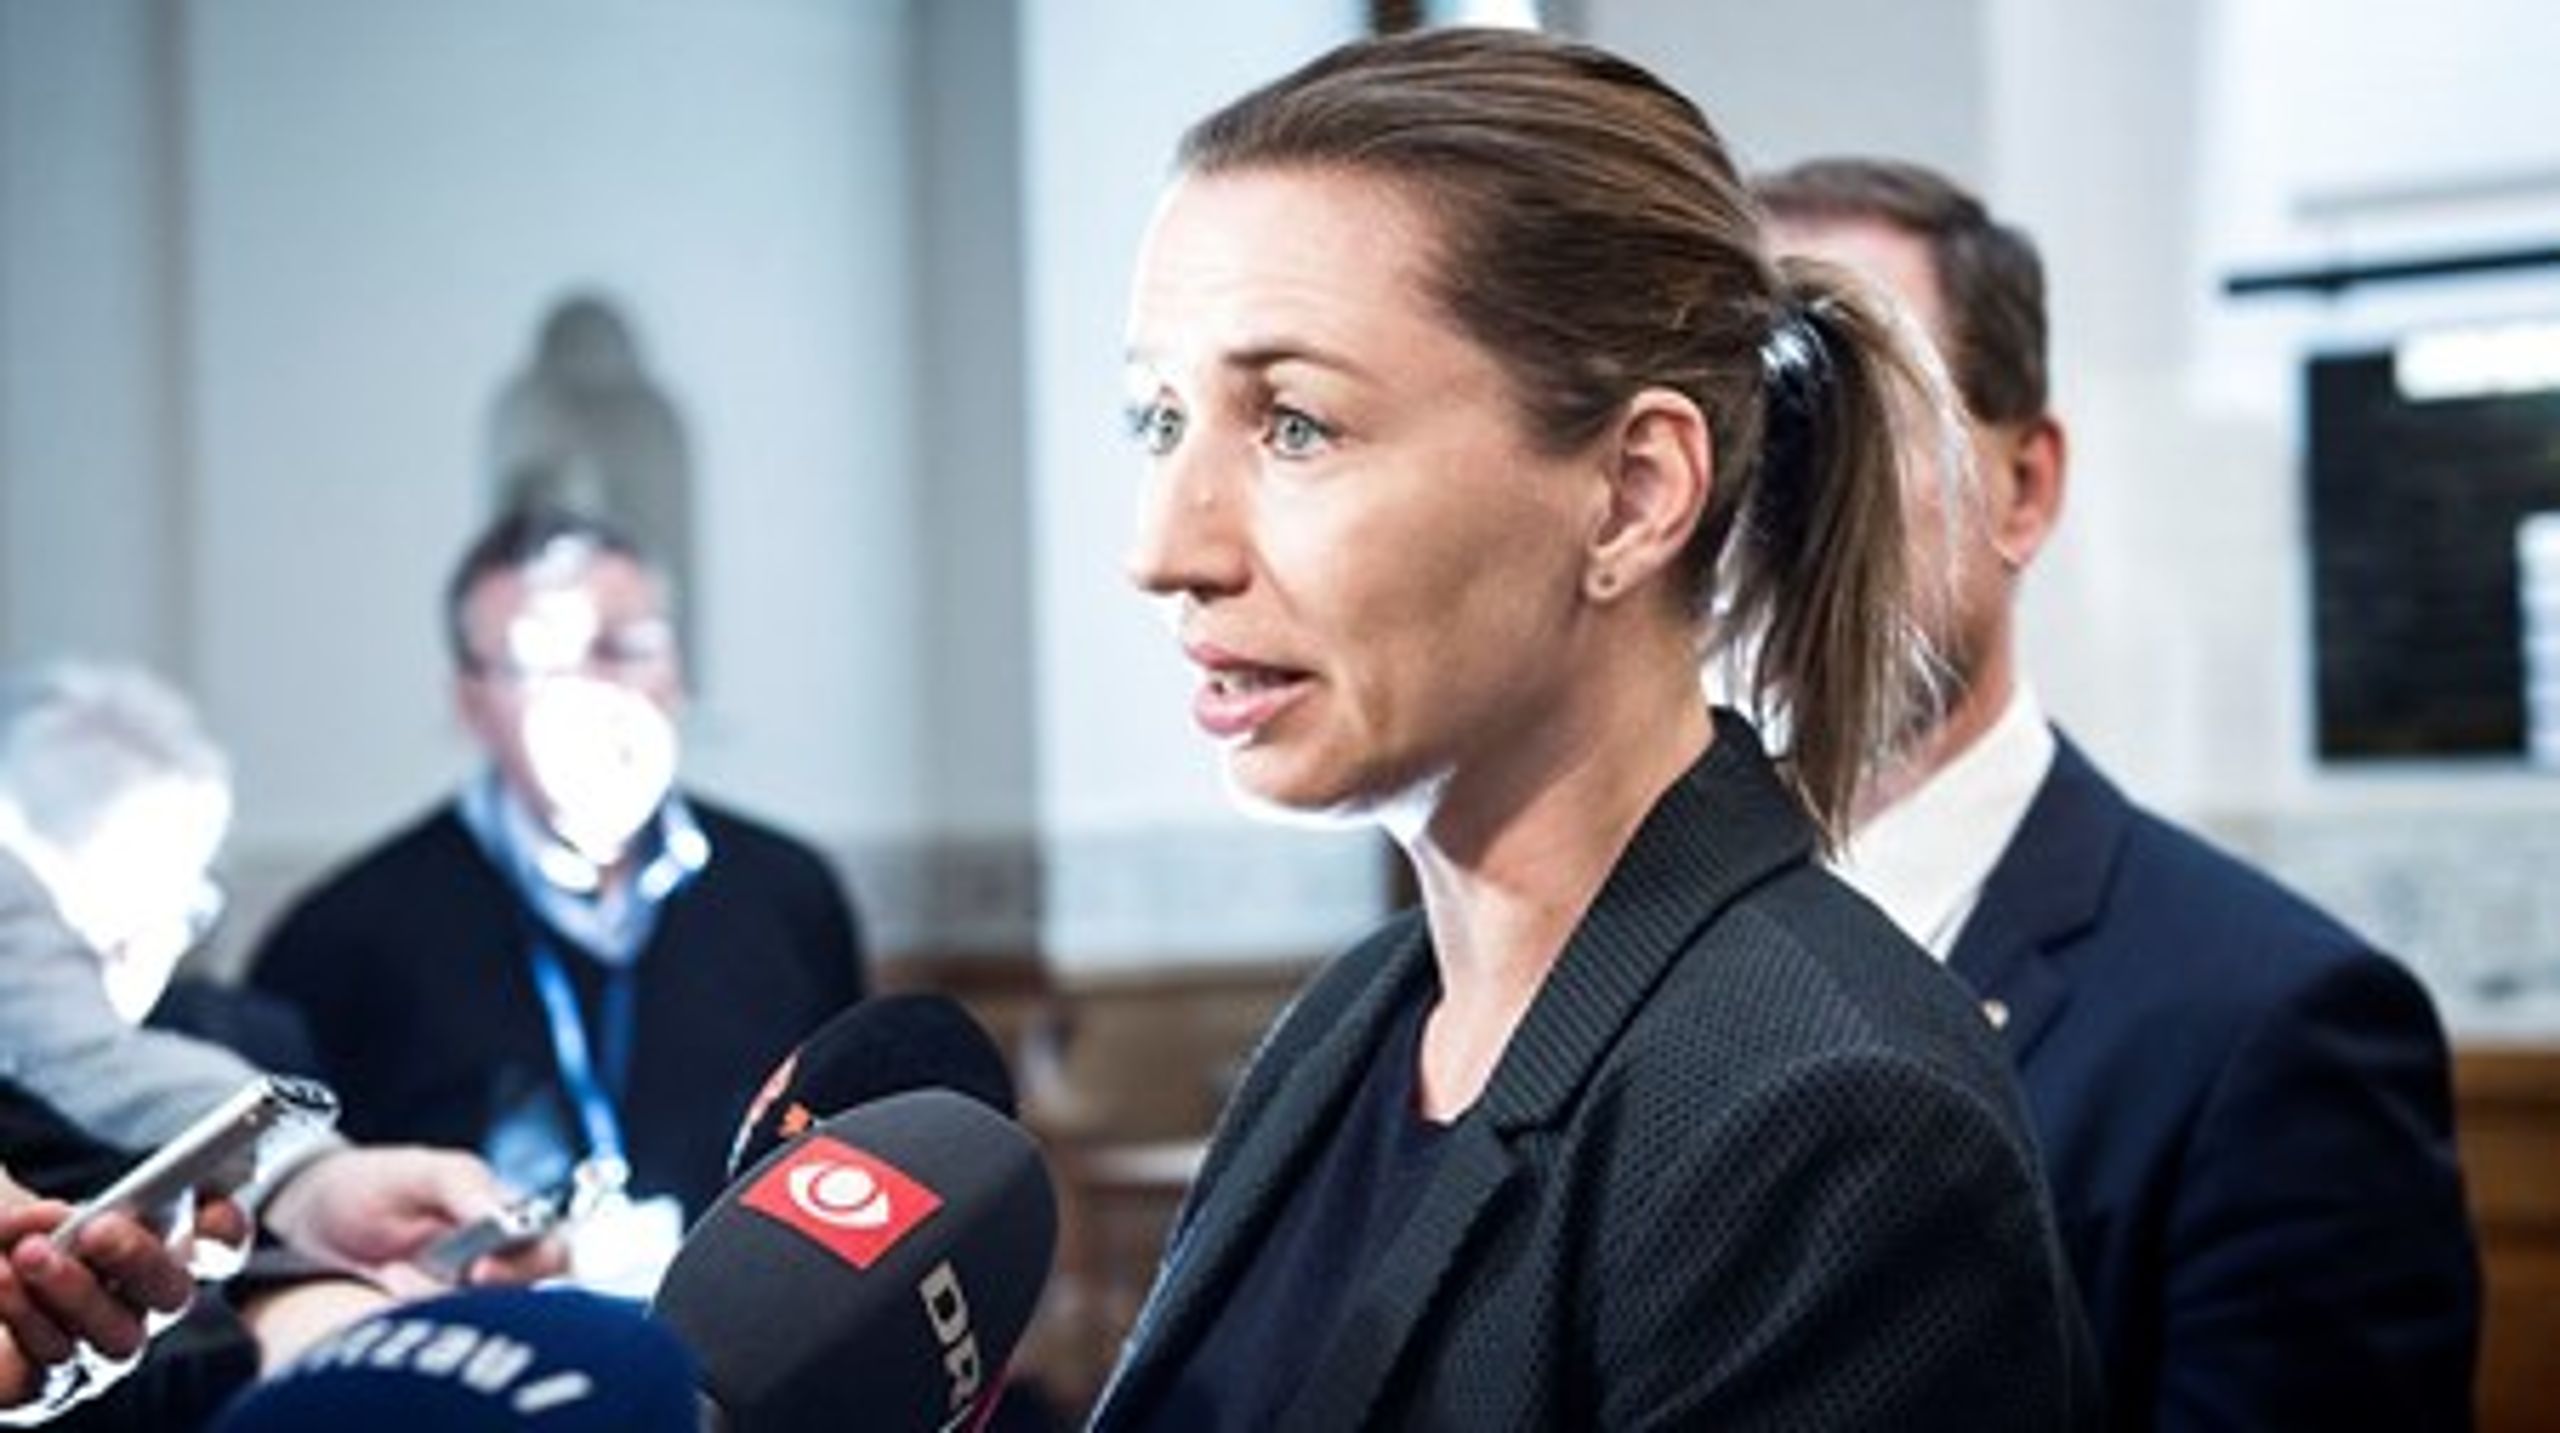 S-formand Mette Frederiksen på vej til forhandlinger om finansloven.&nbsp;